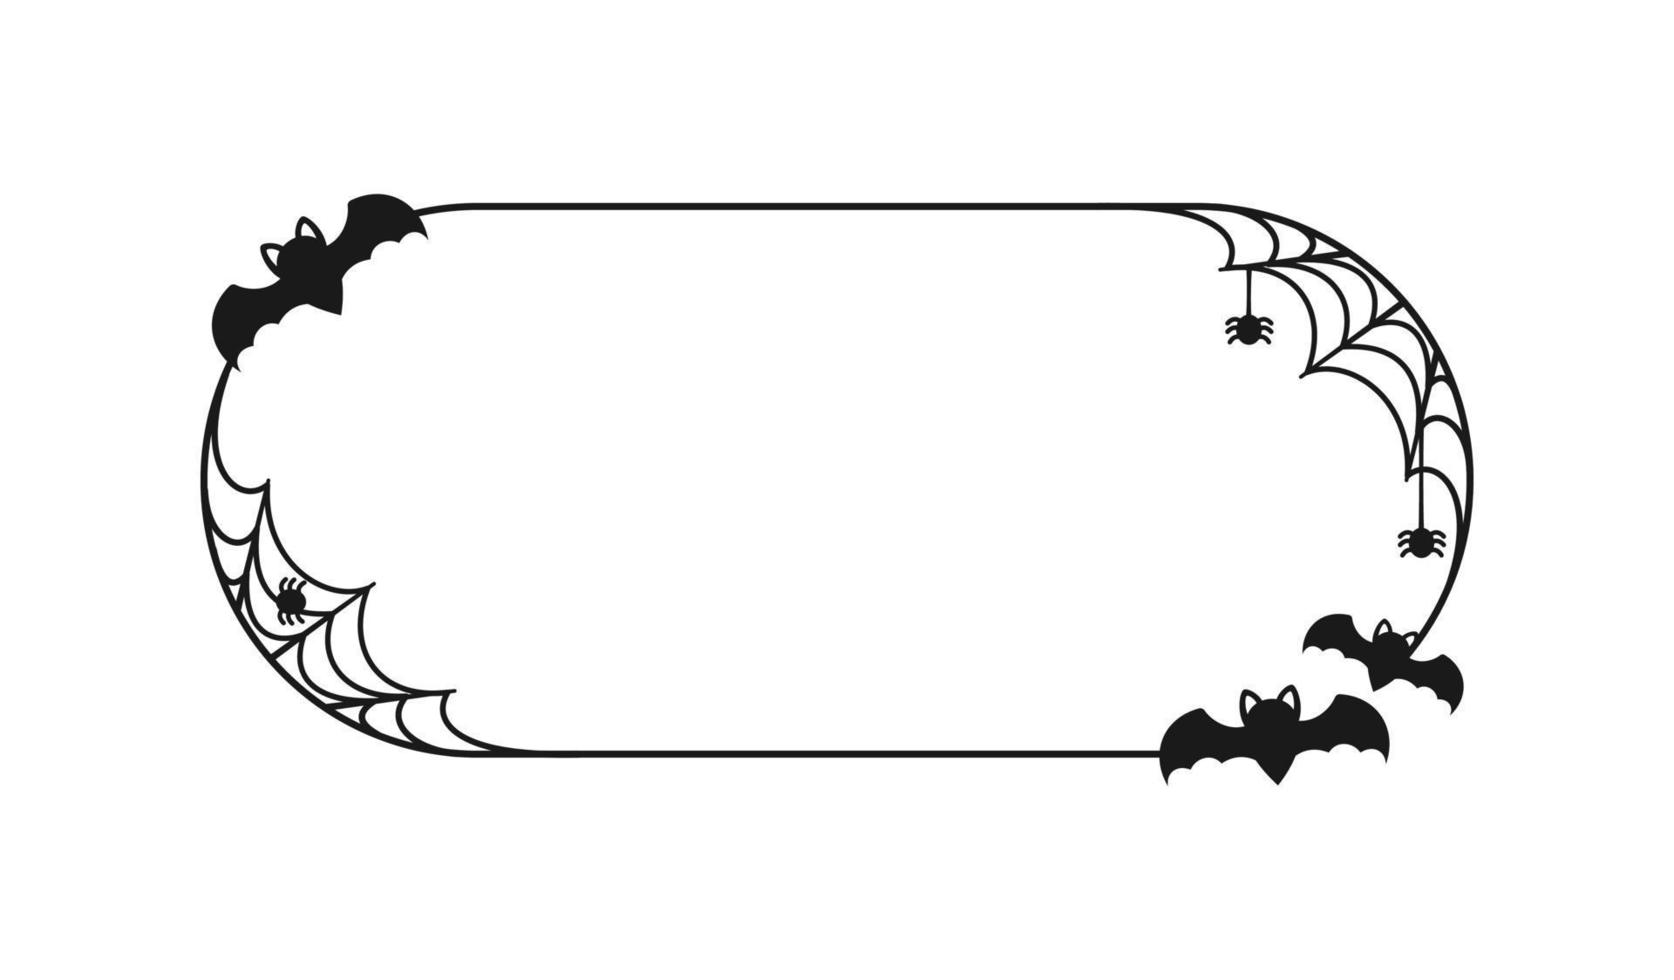 chauve-souris avec des araignées sur le cadre de bordure web. cadres de thème d'halloween vecteur